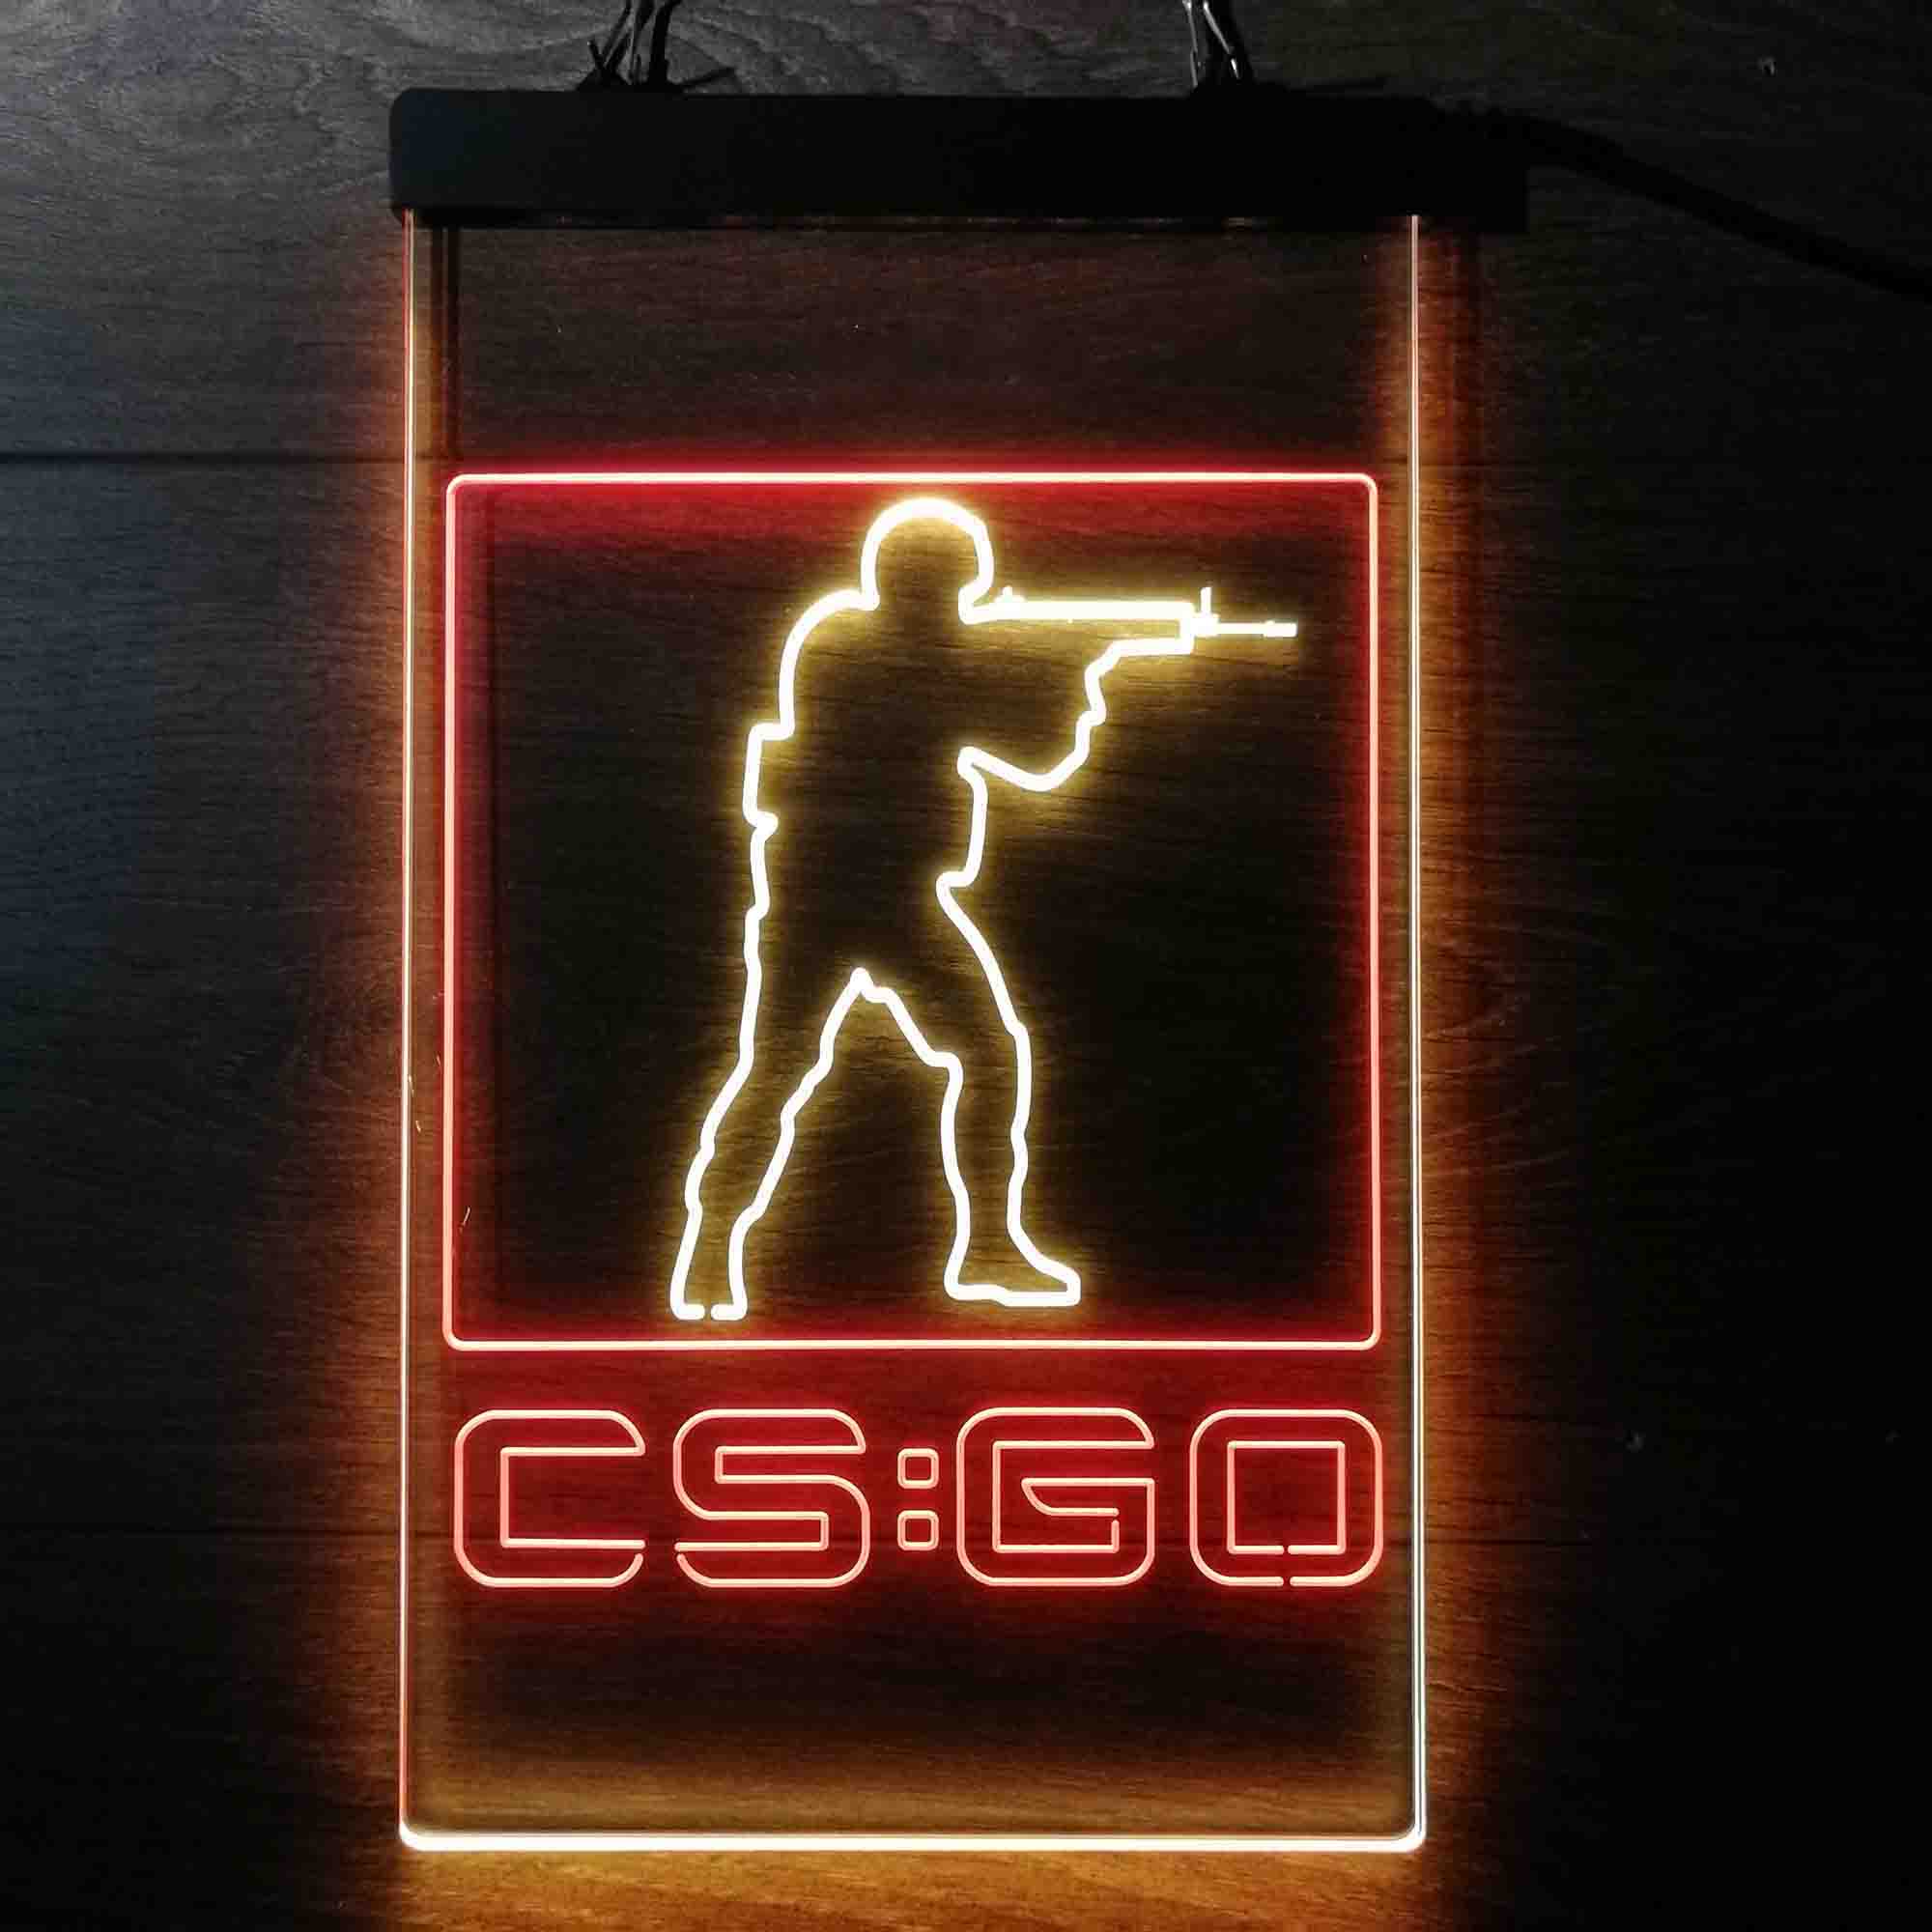 Cs:Go Counter Strike Game Room Neon Light LED Sign